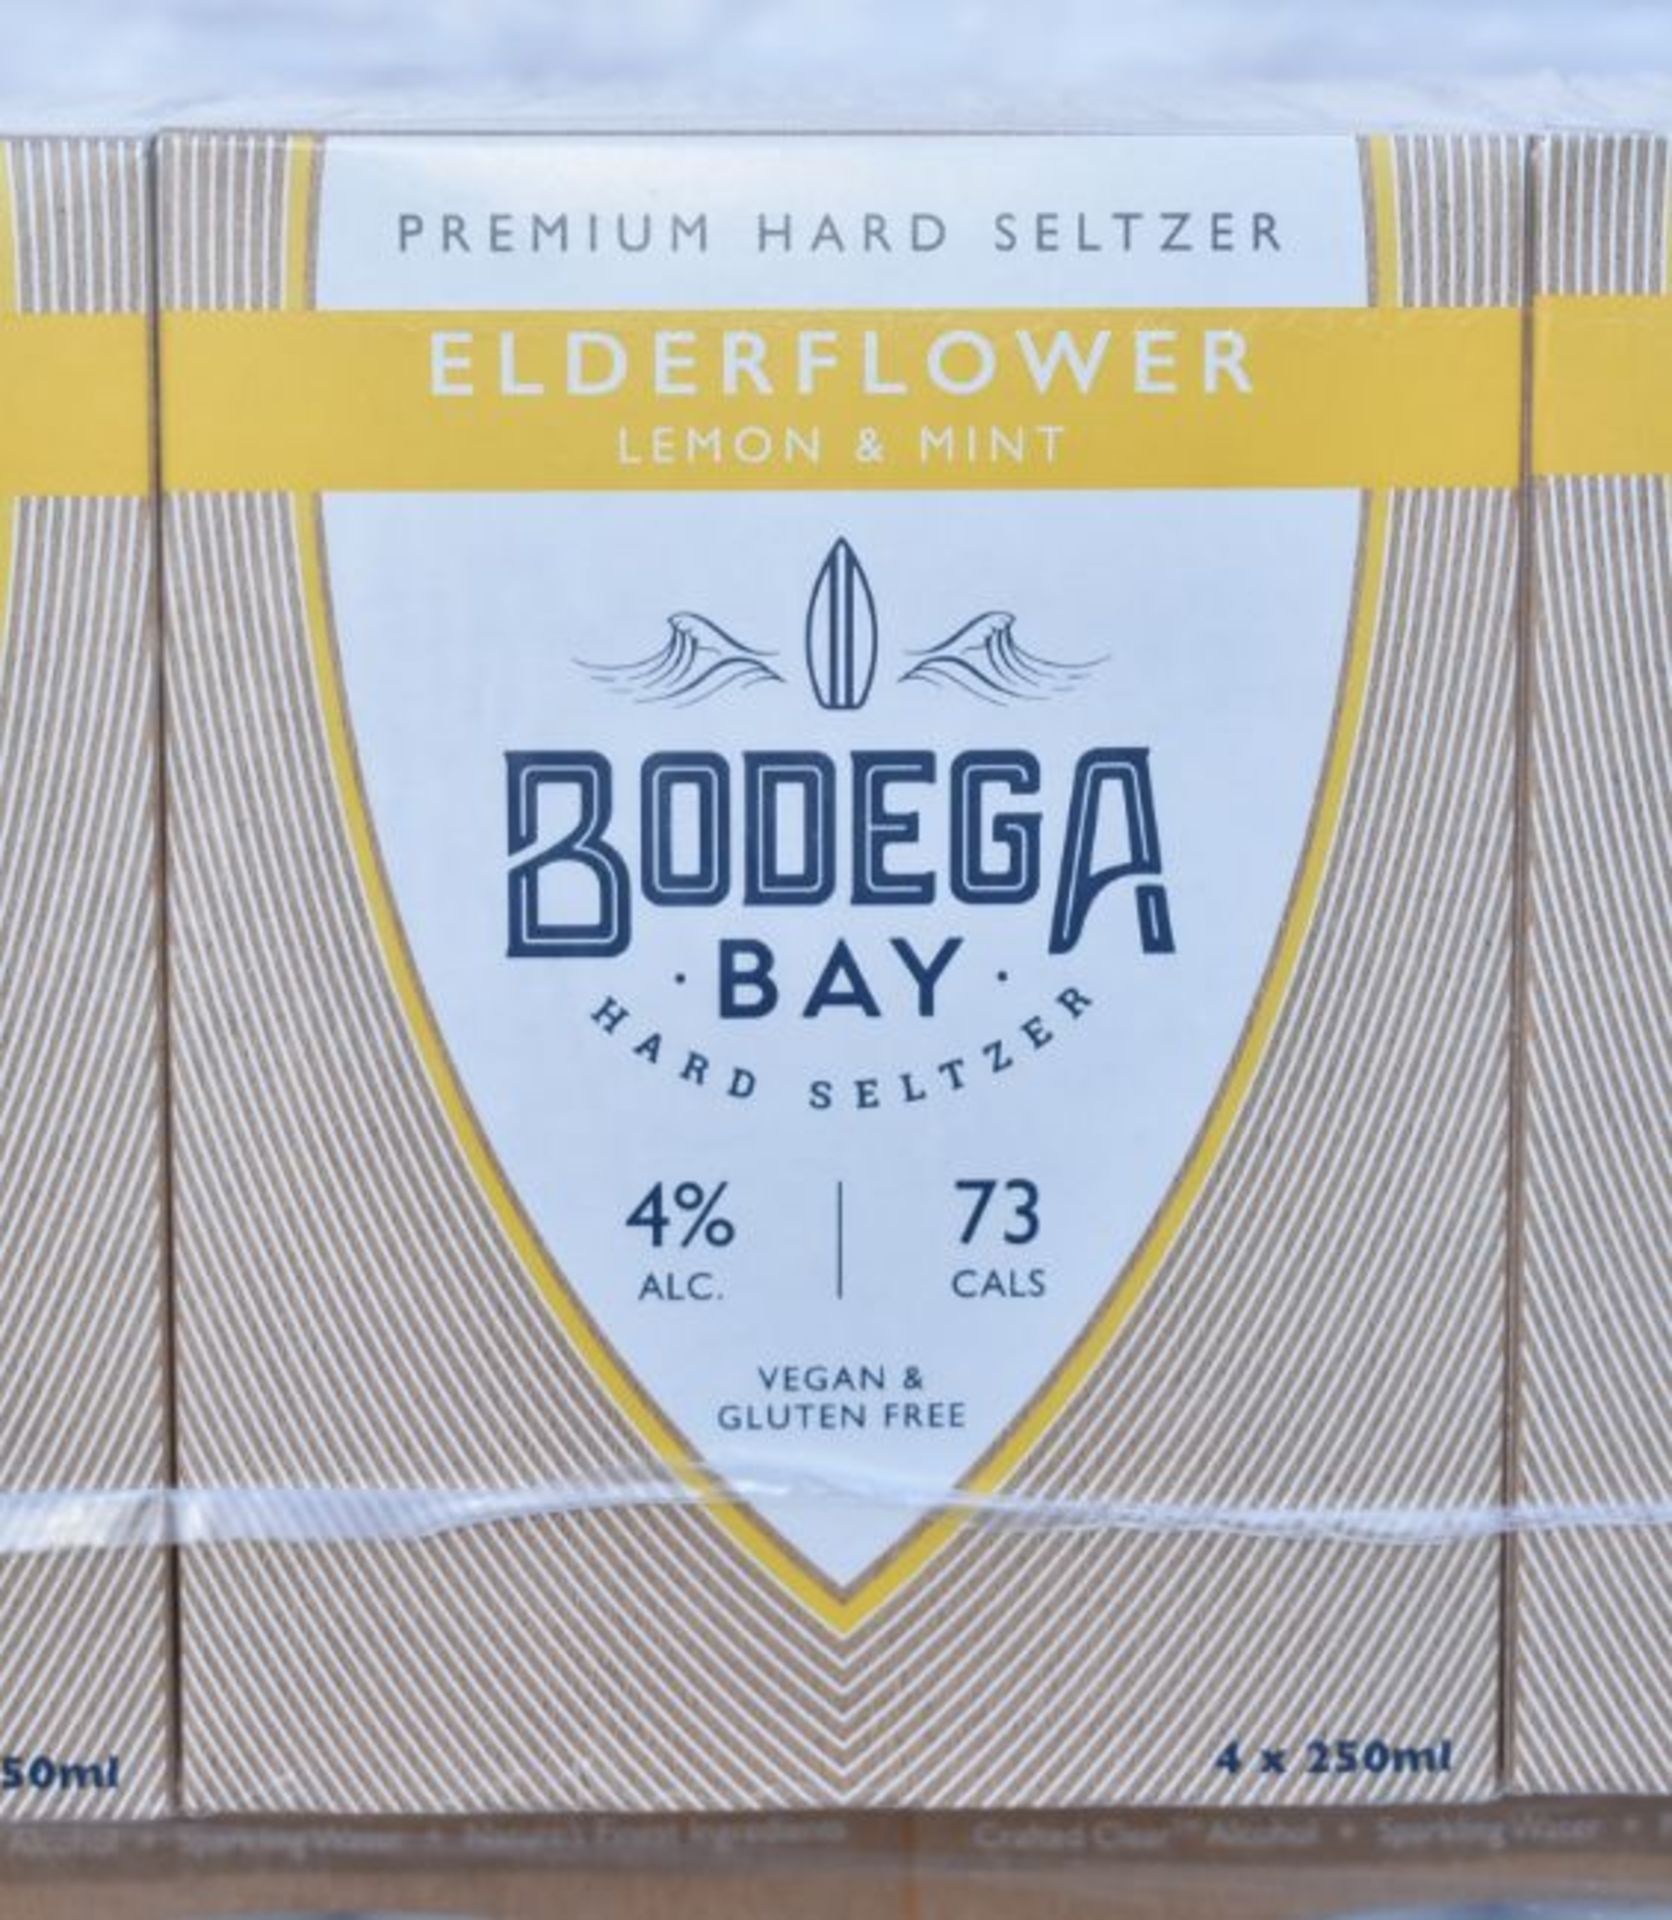 24 x Bodega Bay Hard Seltzer 250ml Alcoholic Sparkling Water Drinks - Elderflower Lemon & Mint - Image 8 of 9